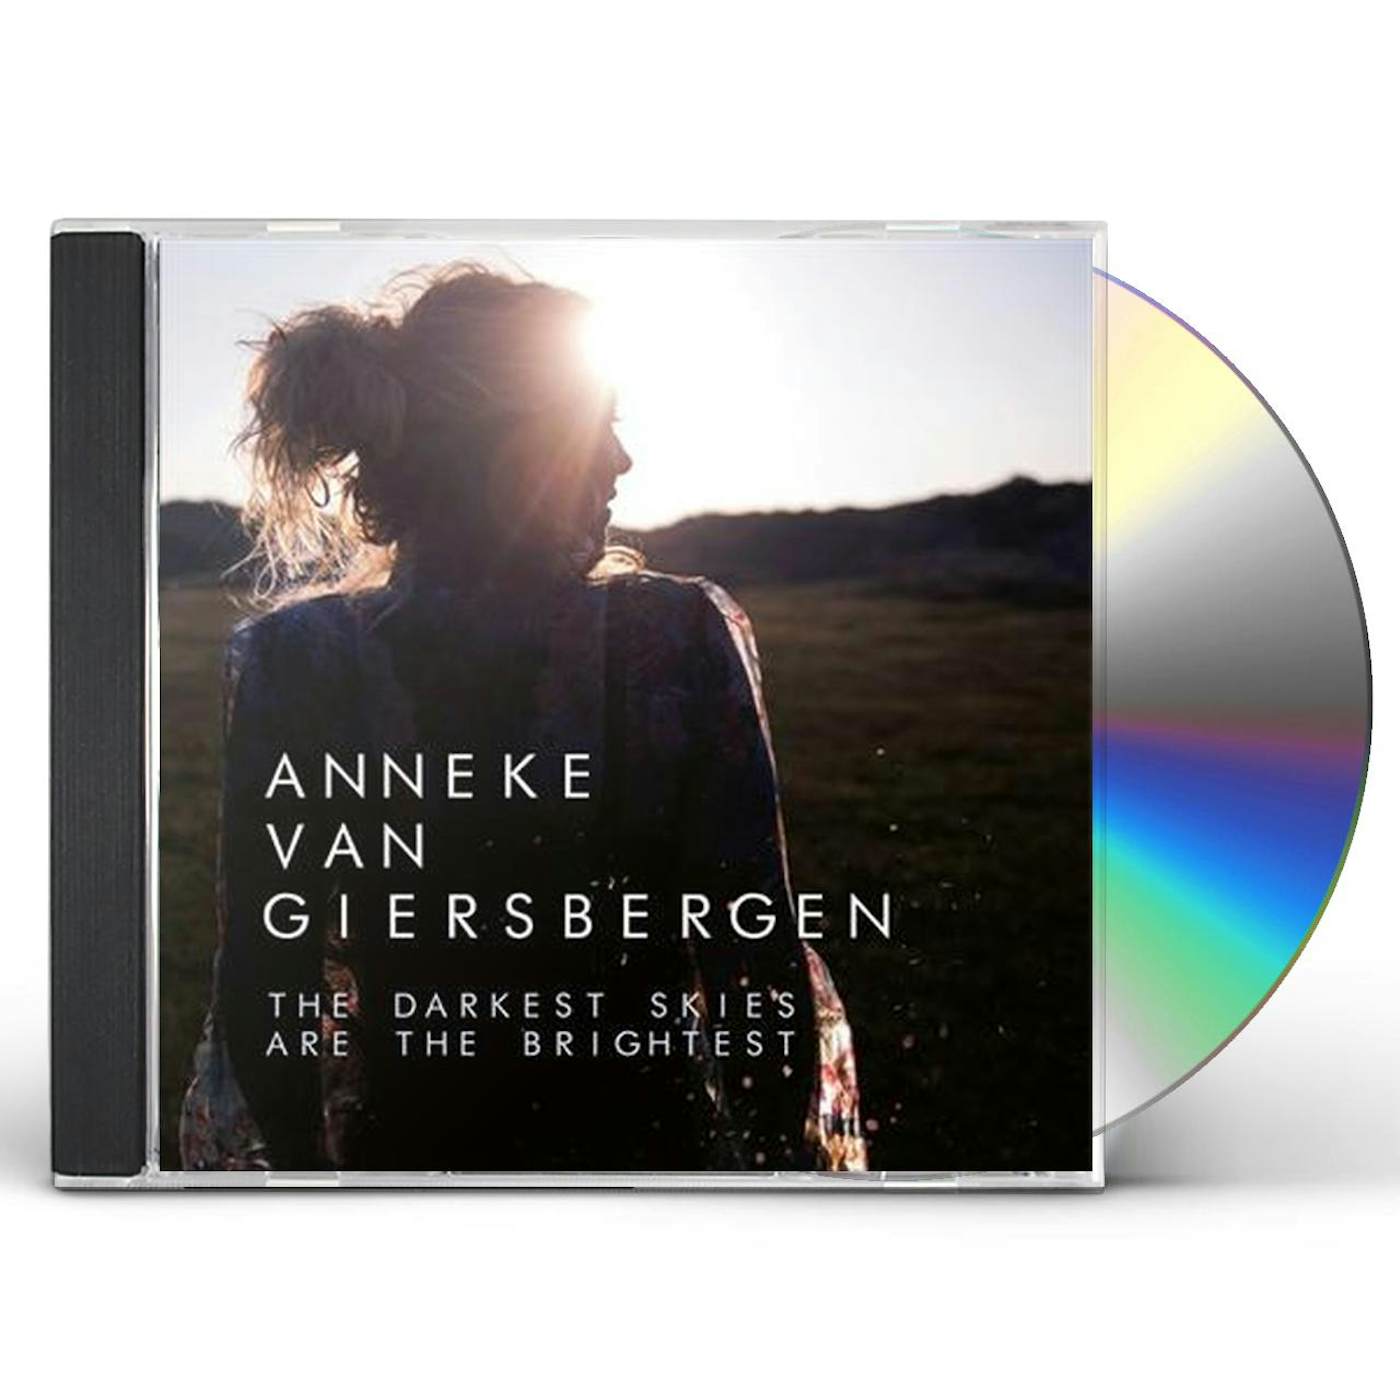 Anneke Van Giersbergen DARKEST SKIES ARE THE BRIGHTEST CD